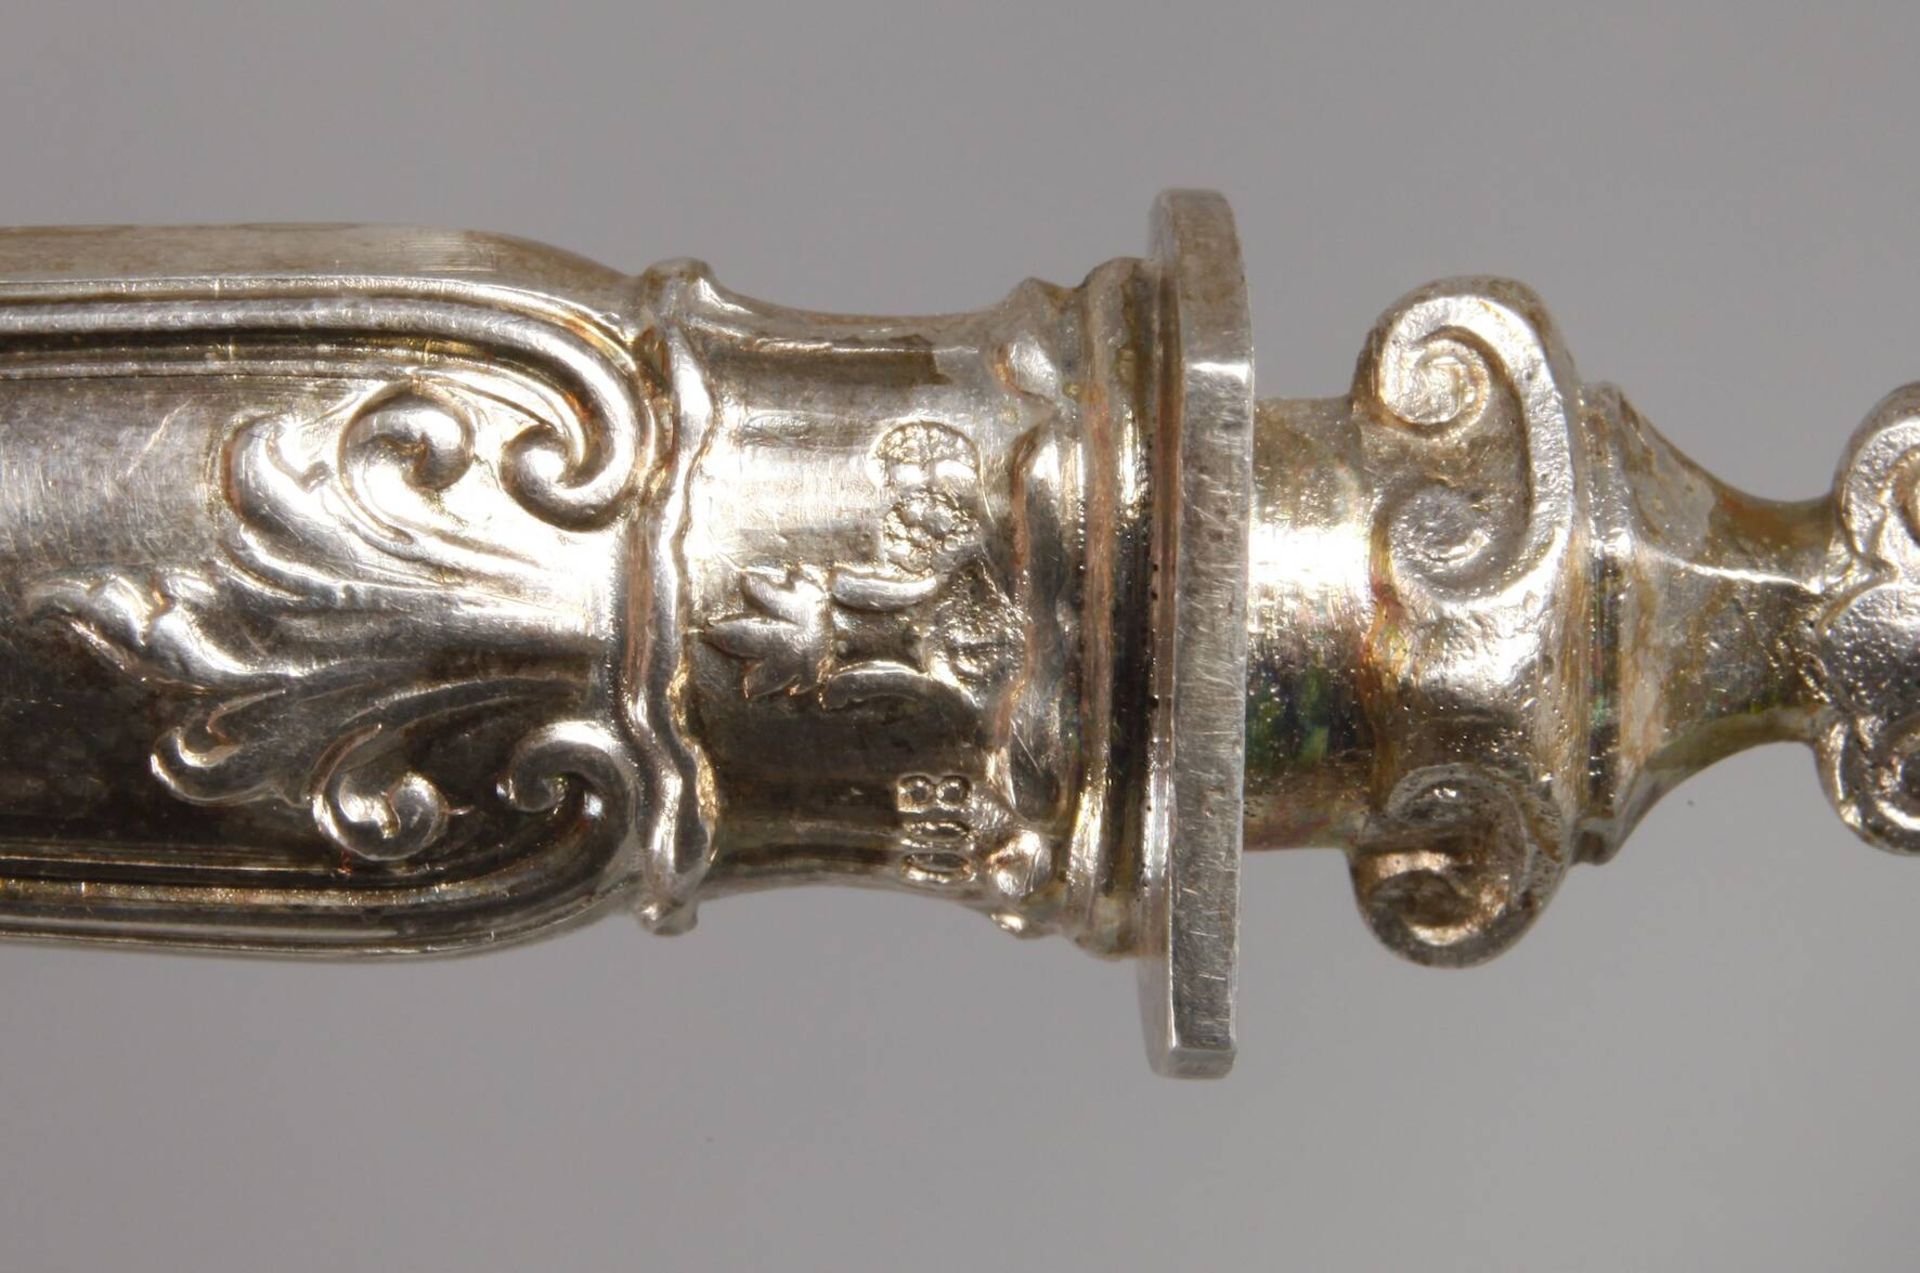 Silber Tortenheber aus dem Besitz Kaiser Wilhelm II. von Preußendatiert 1900, Silberstempel - Image 6 of 6